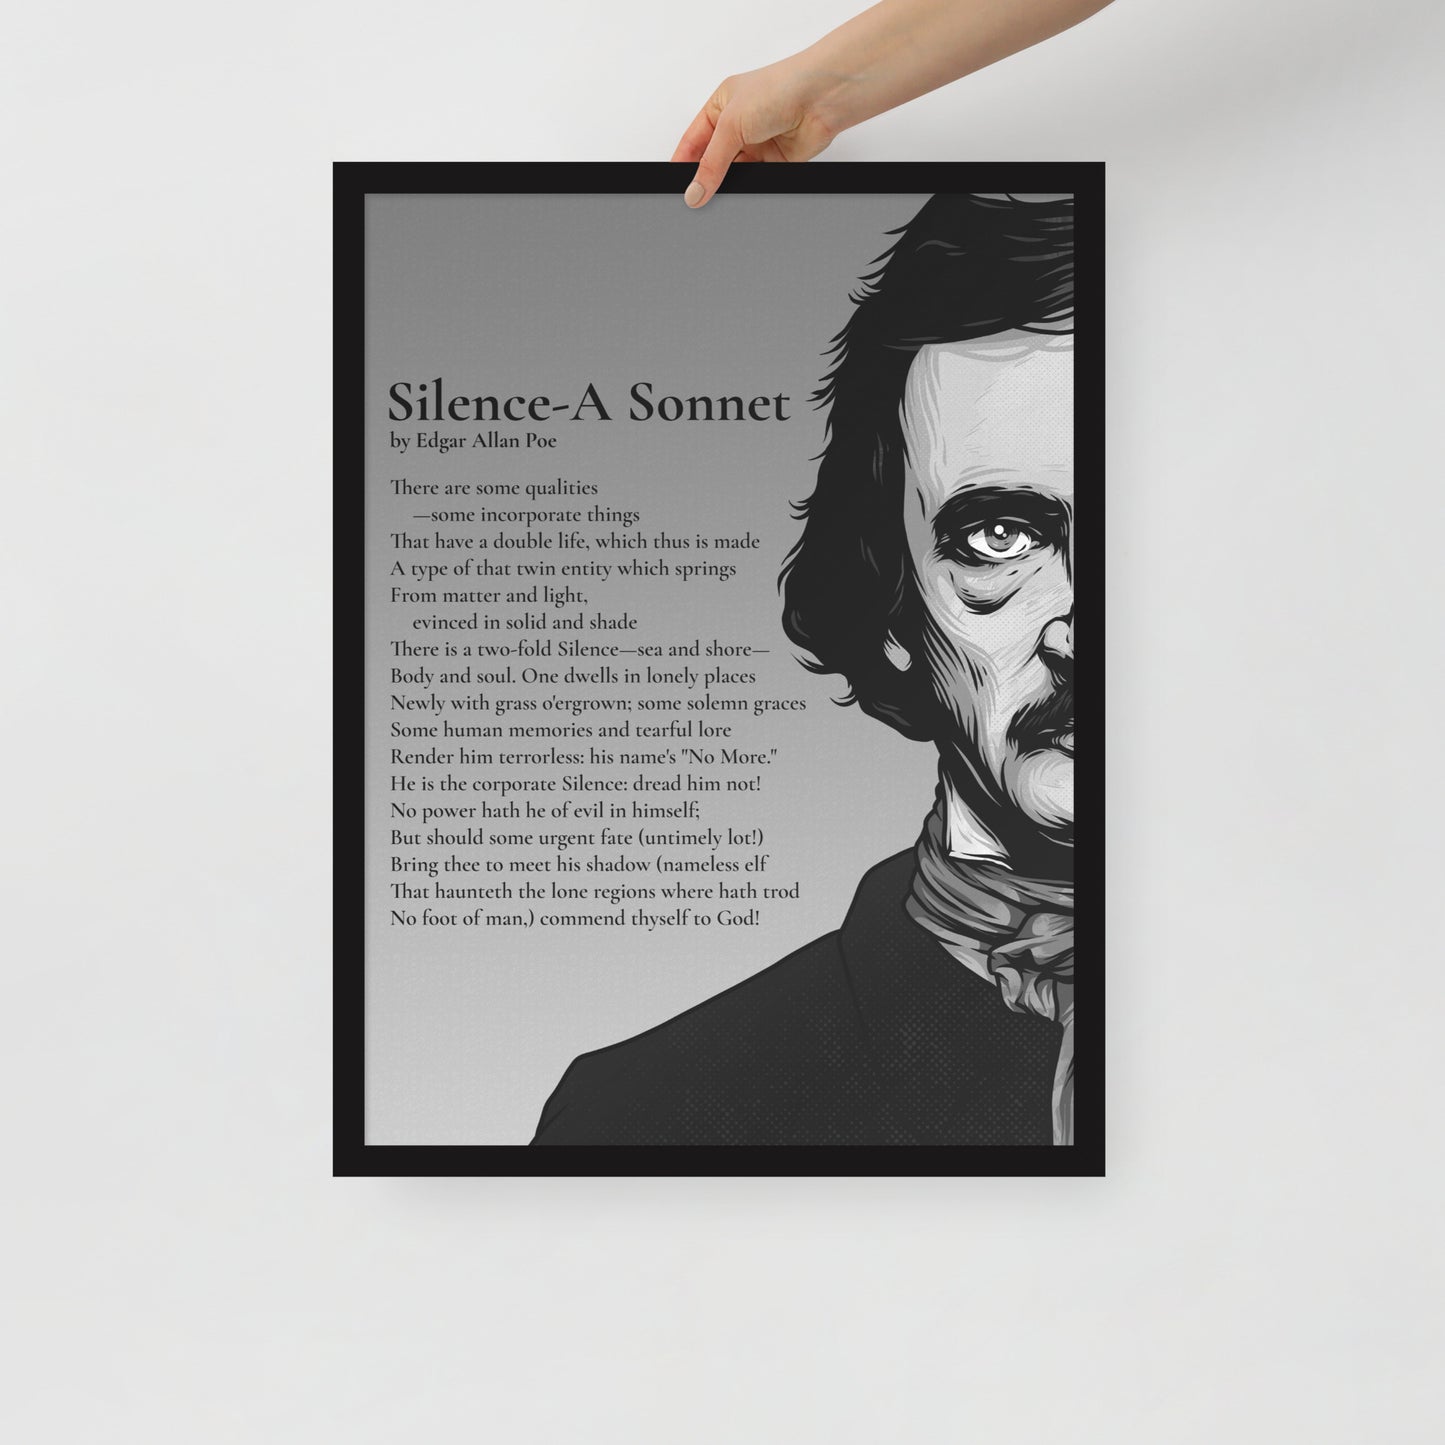 Edgar Allan Poe's 'Silence-A Sonnet' Framed Matted Poster - 18 x 24 Black Frame